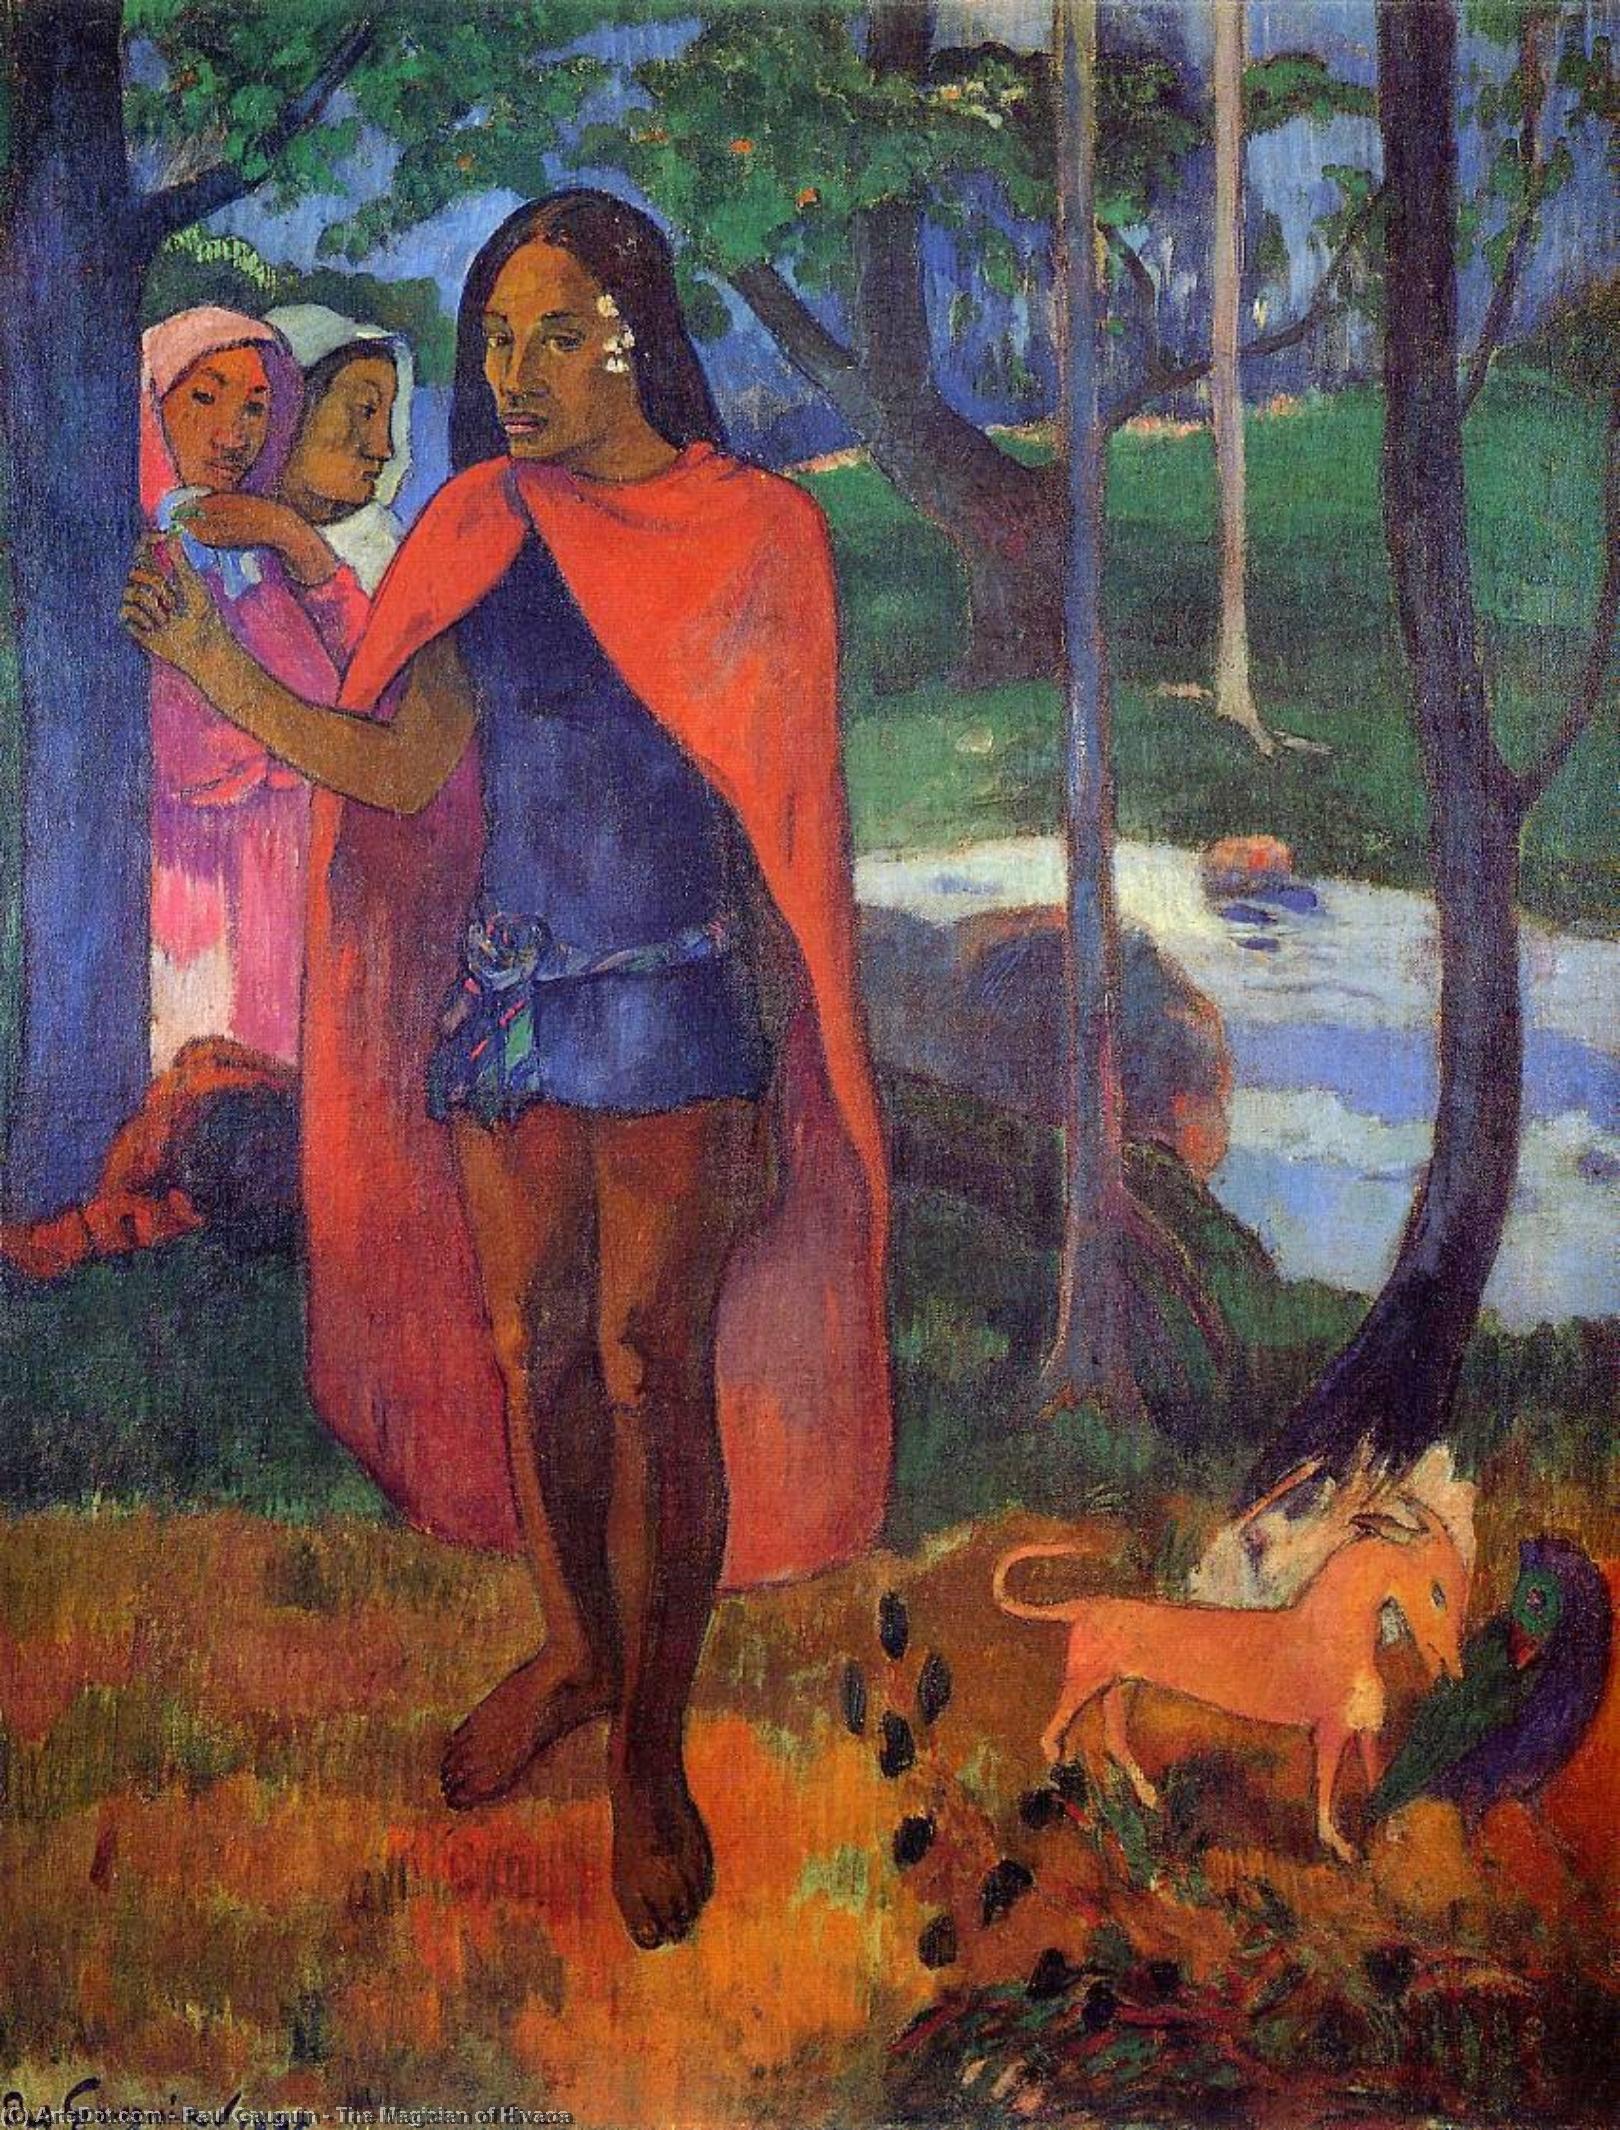 WikiOO.org - Encyclopedia of Fine Arts - Schilderen, Artwork Paul Gauguin - The Magician of Hivaoa